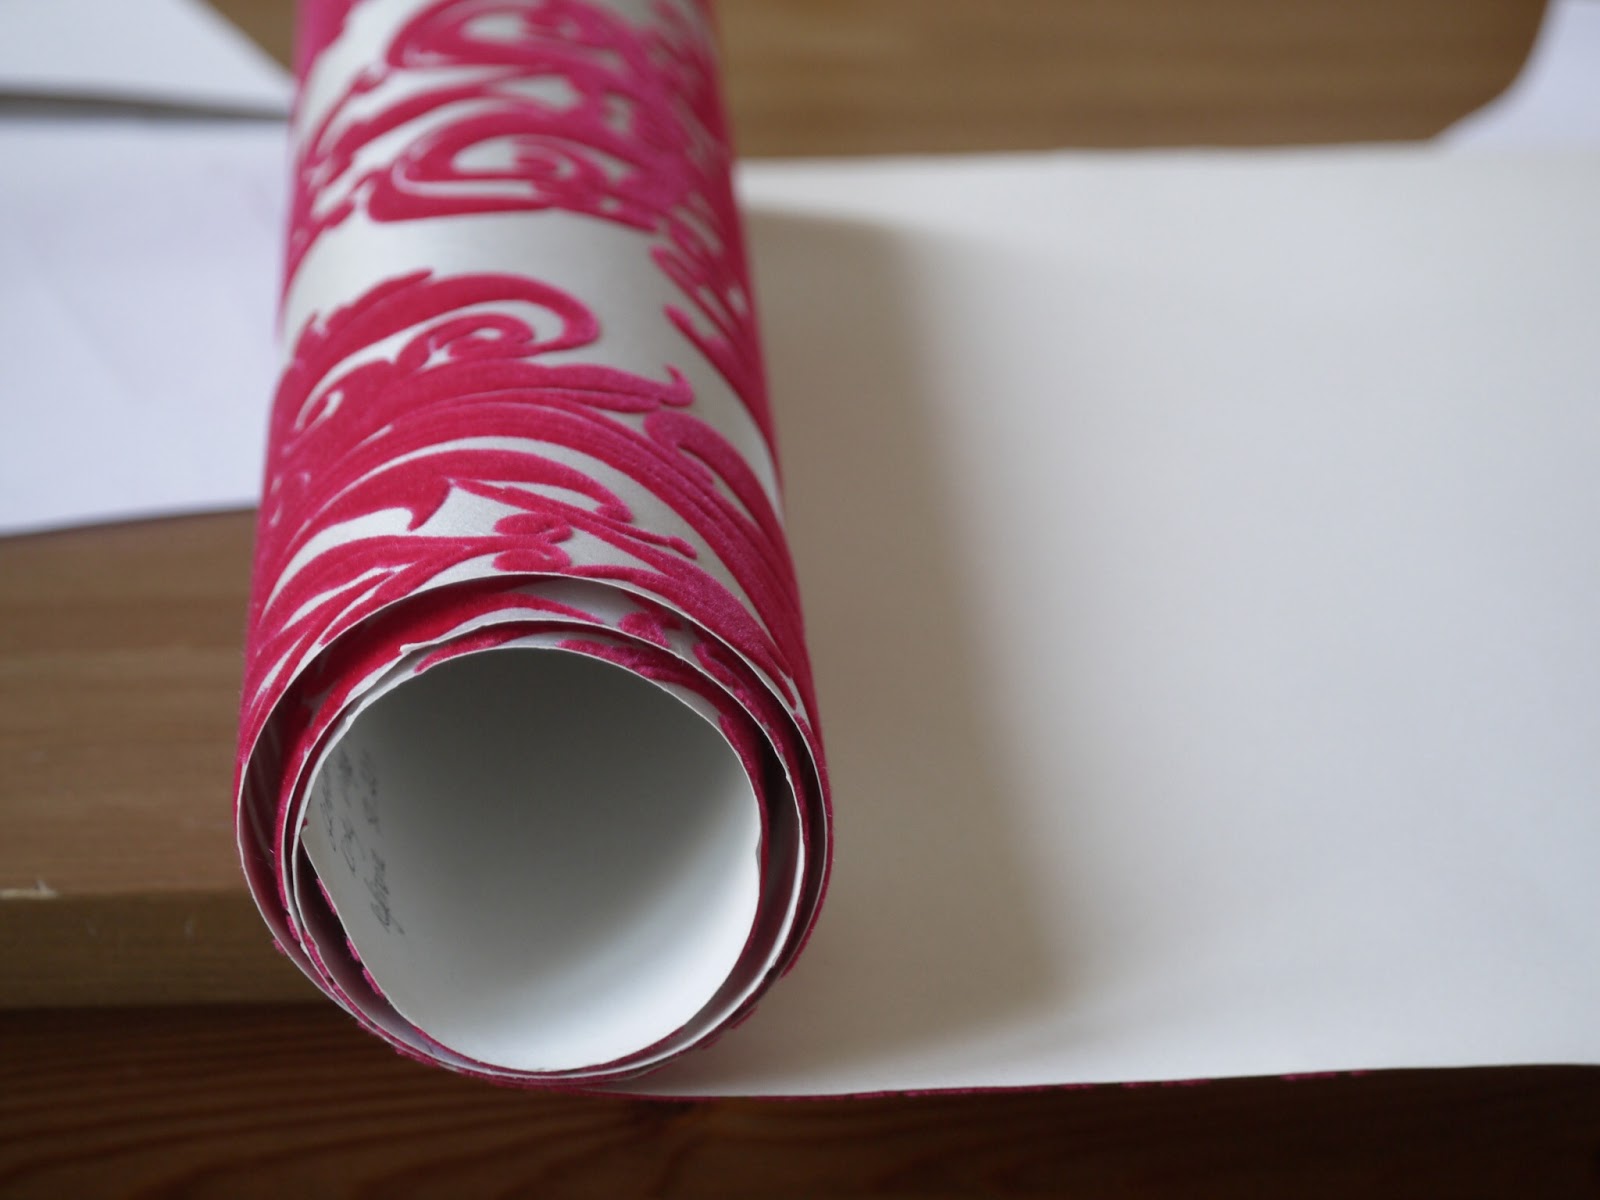 Papier Peint Qualité Supérieur - Les papiers peints Chantemur Le papier peint en qualité